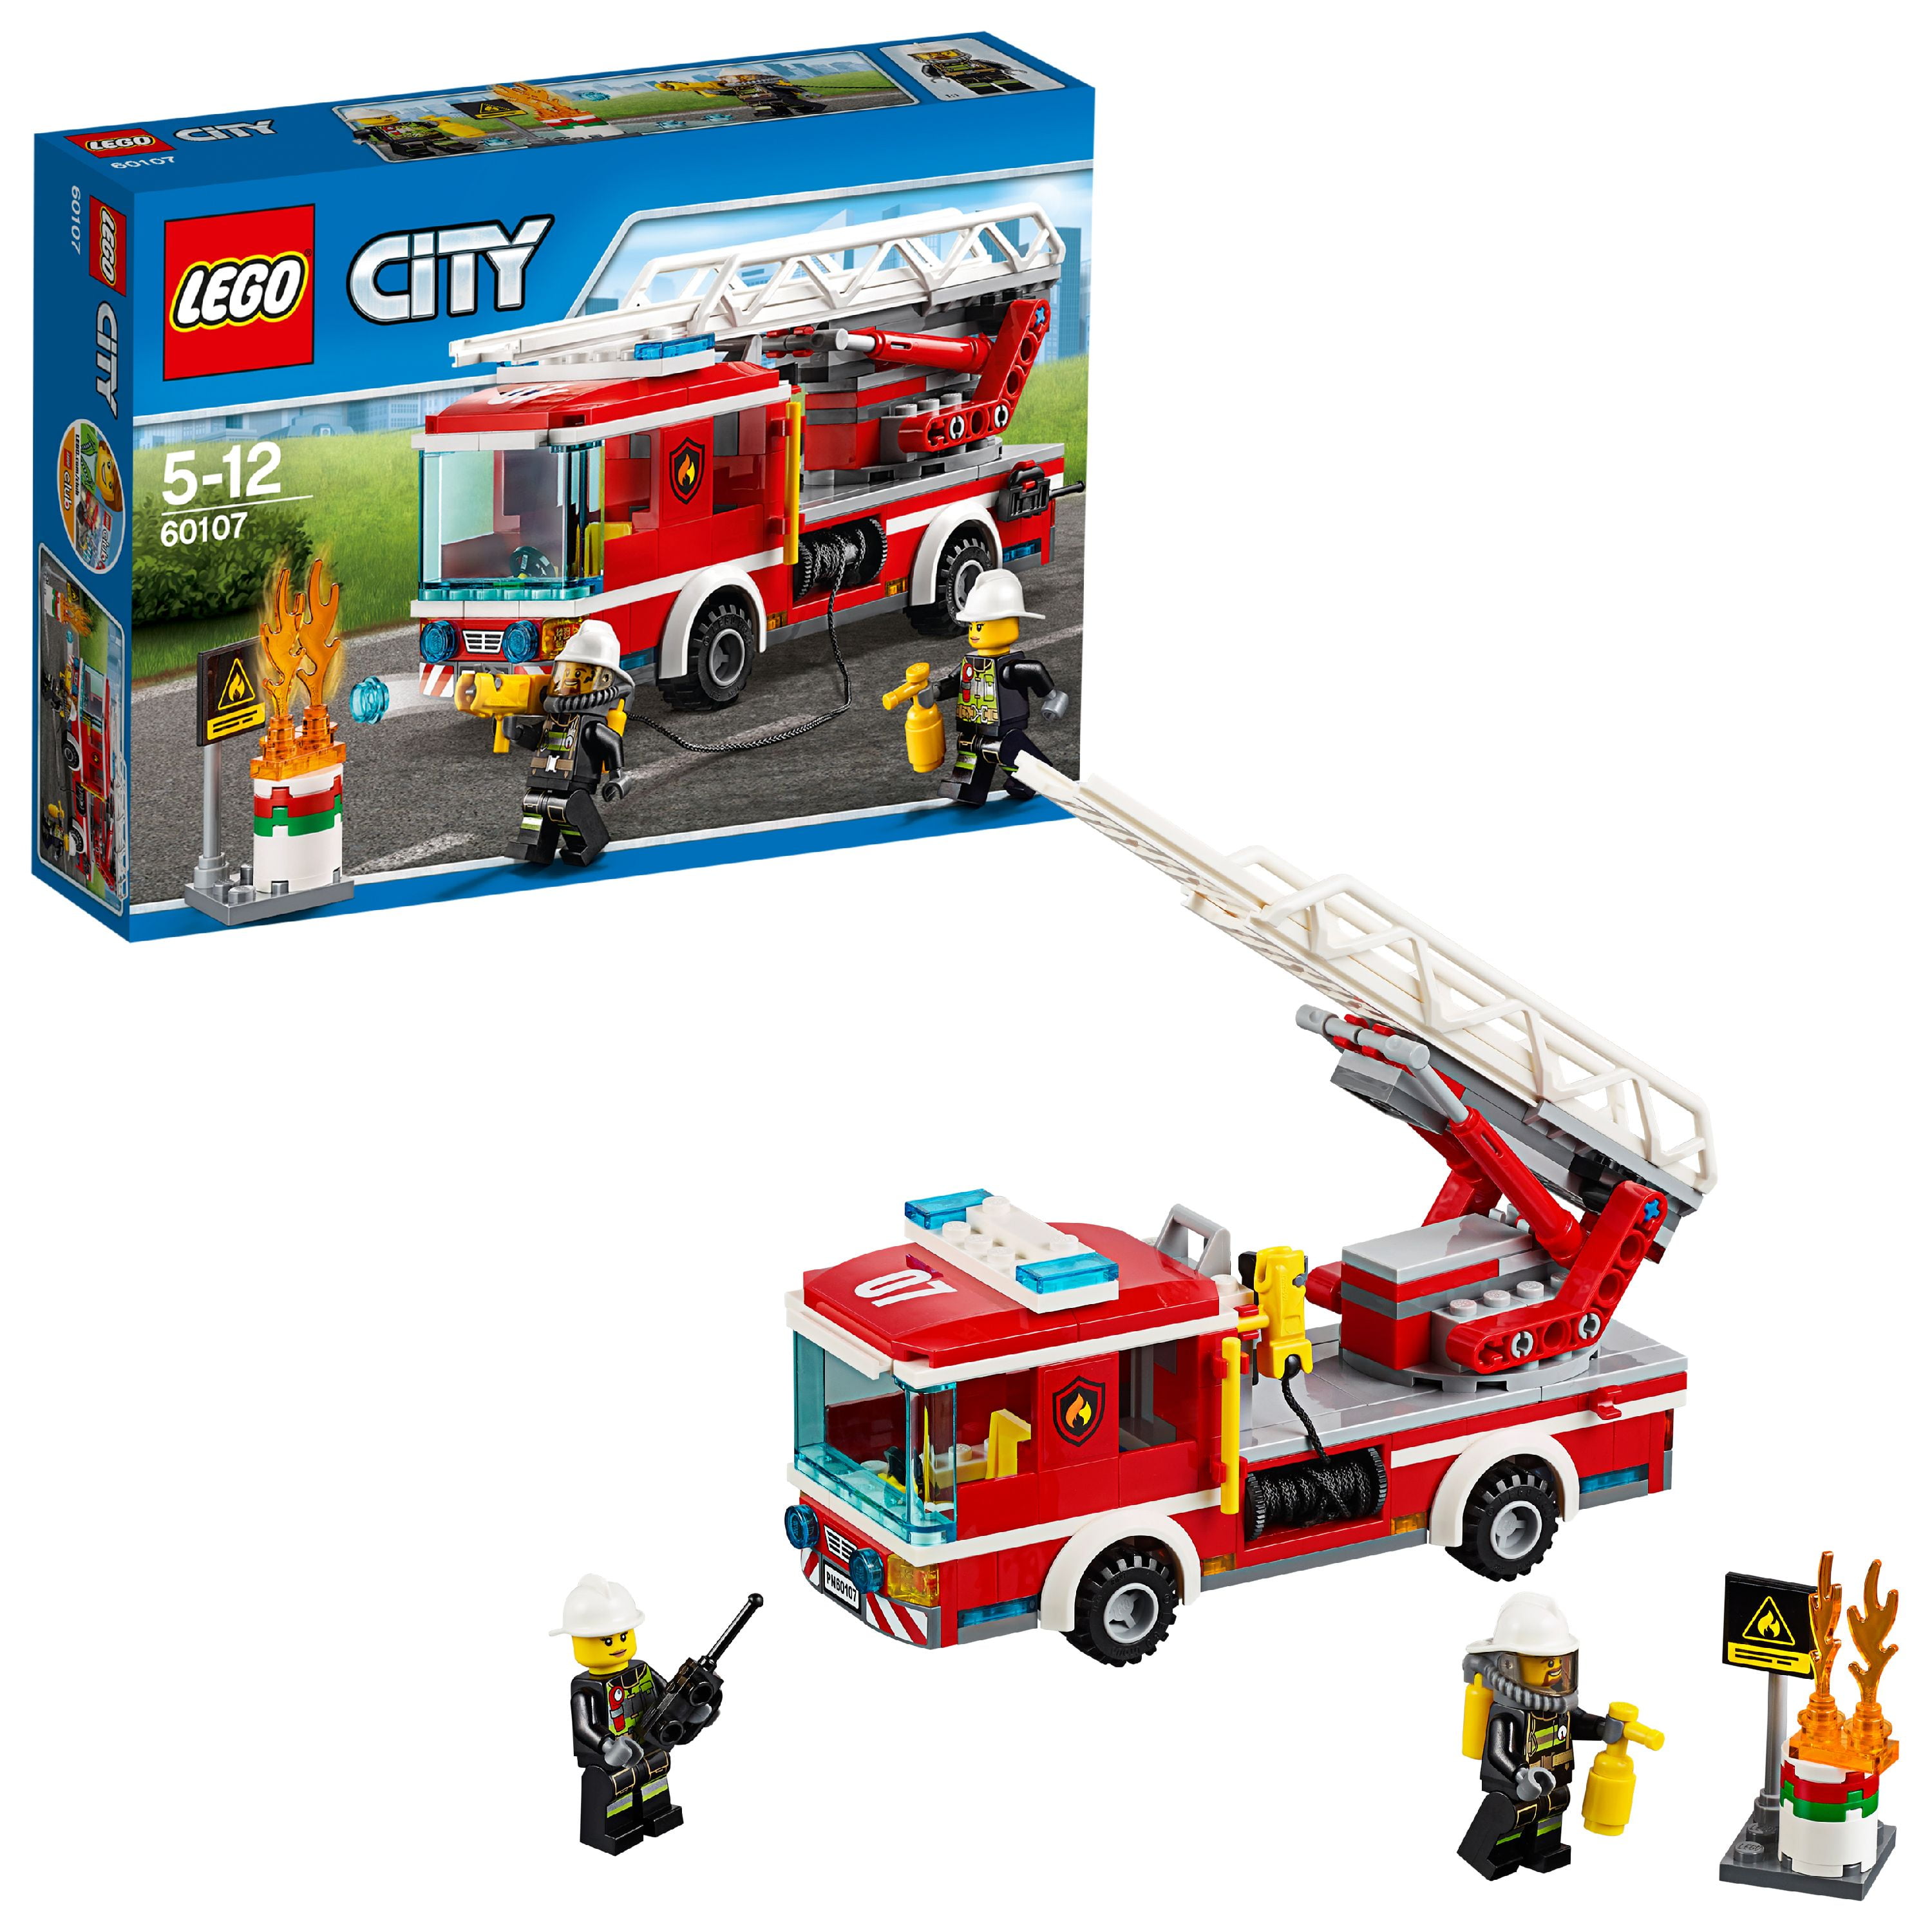 LEGO City Fire Fire Ladder Truck 60107 - Walmart.com ...